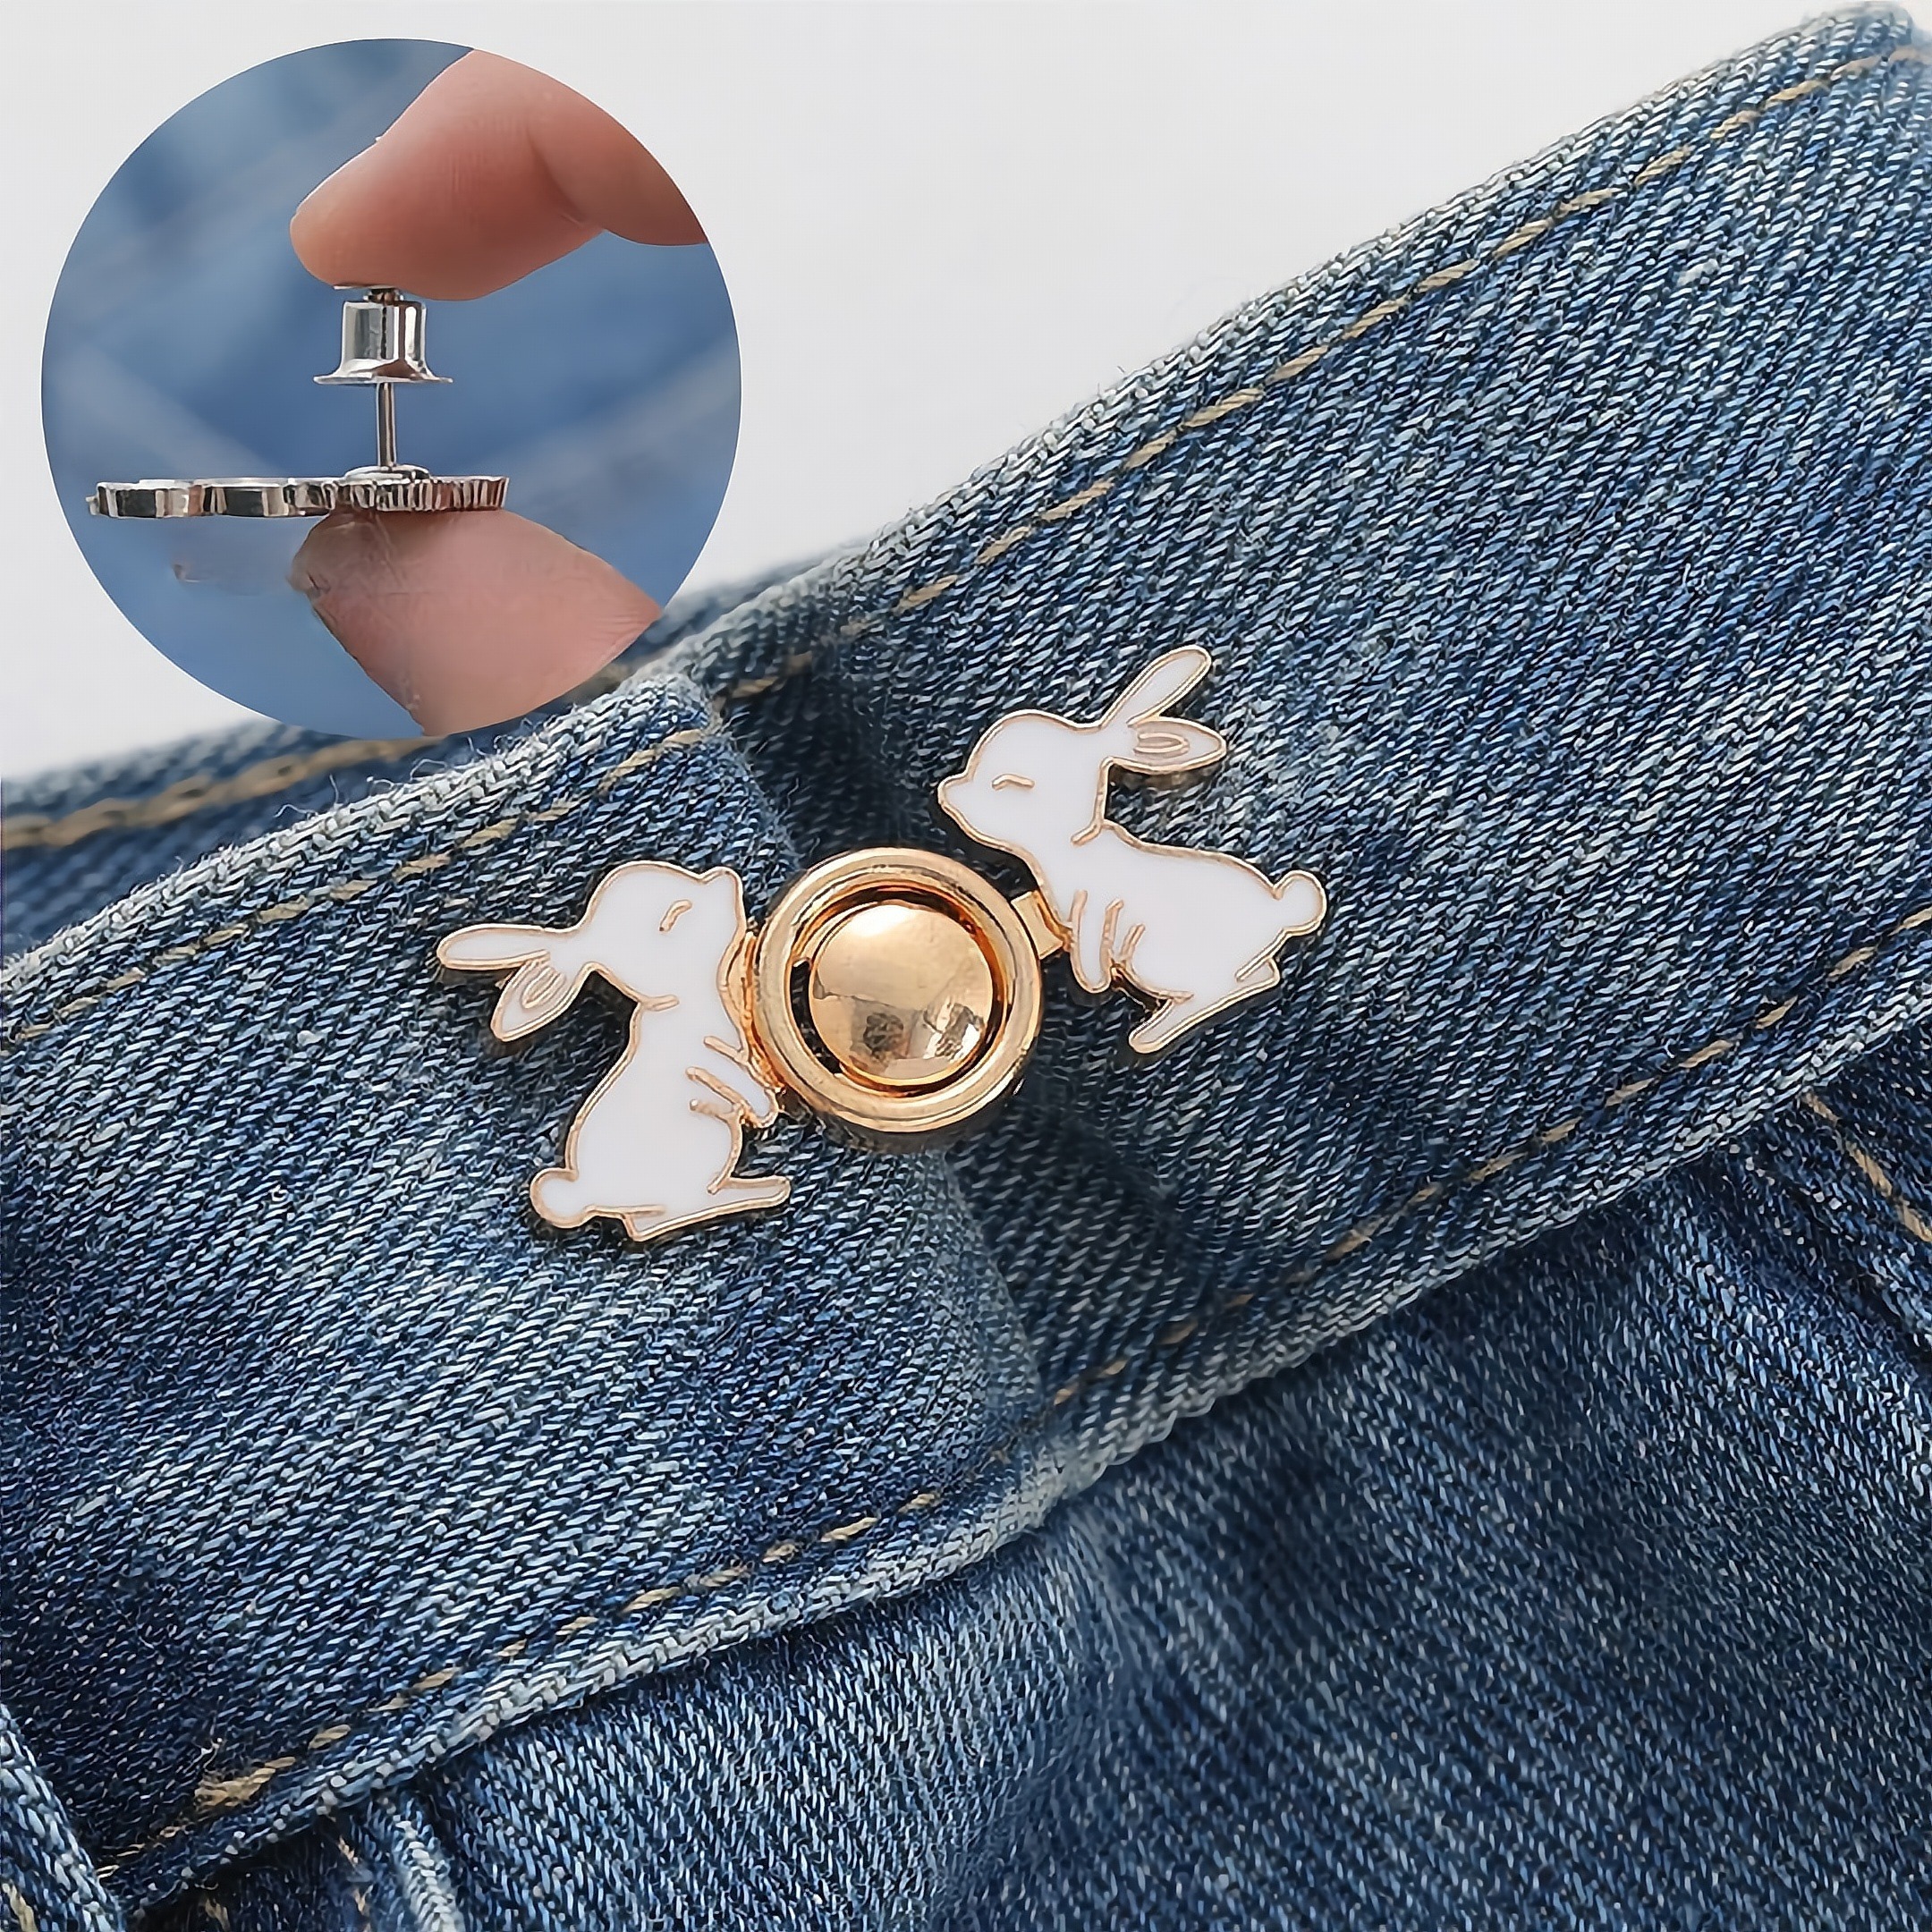 4 paires de boutons de pin mignons pour jeans, pas de couture et pas  d'outils